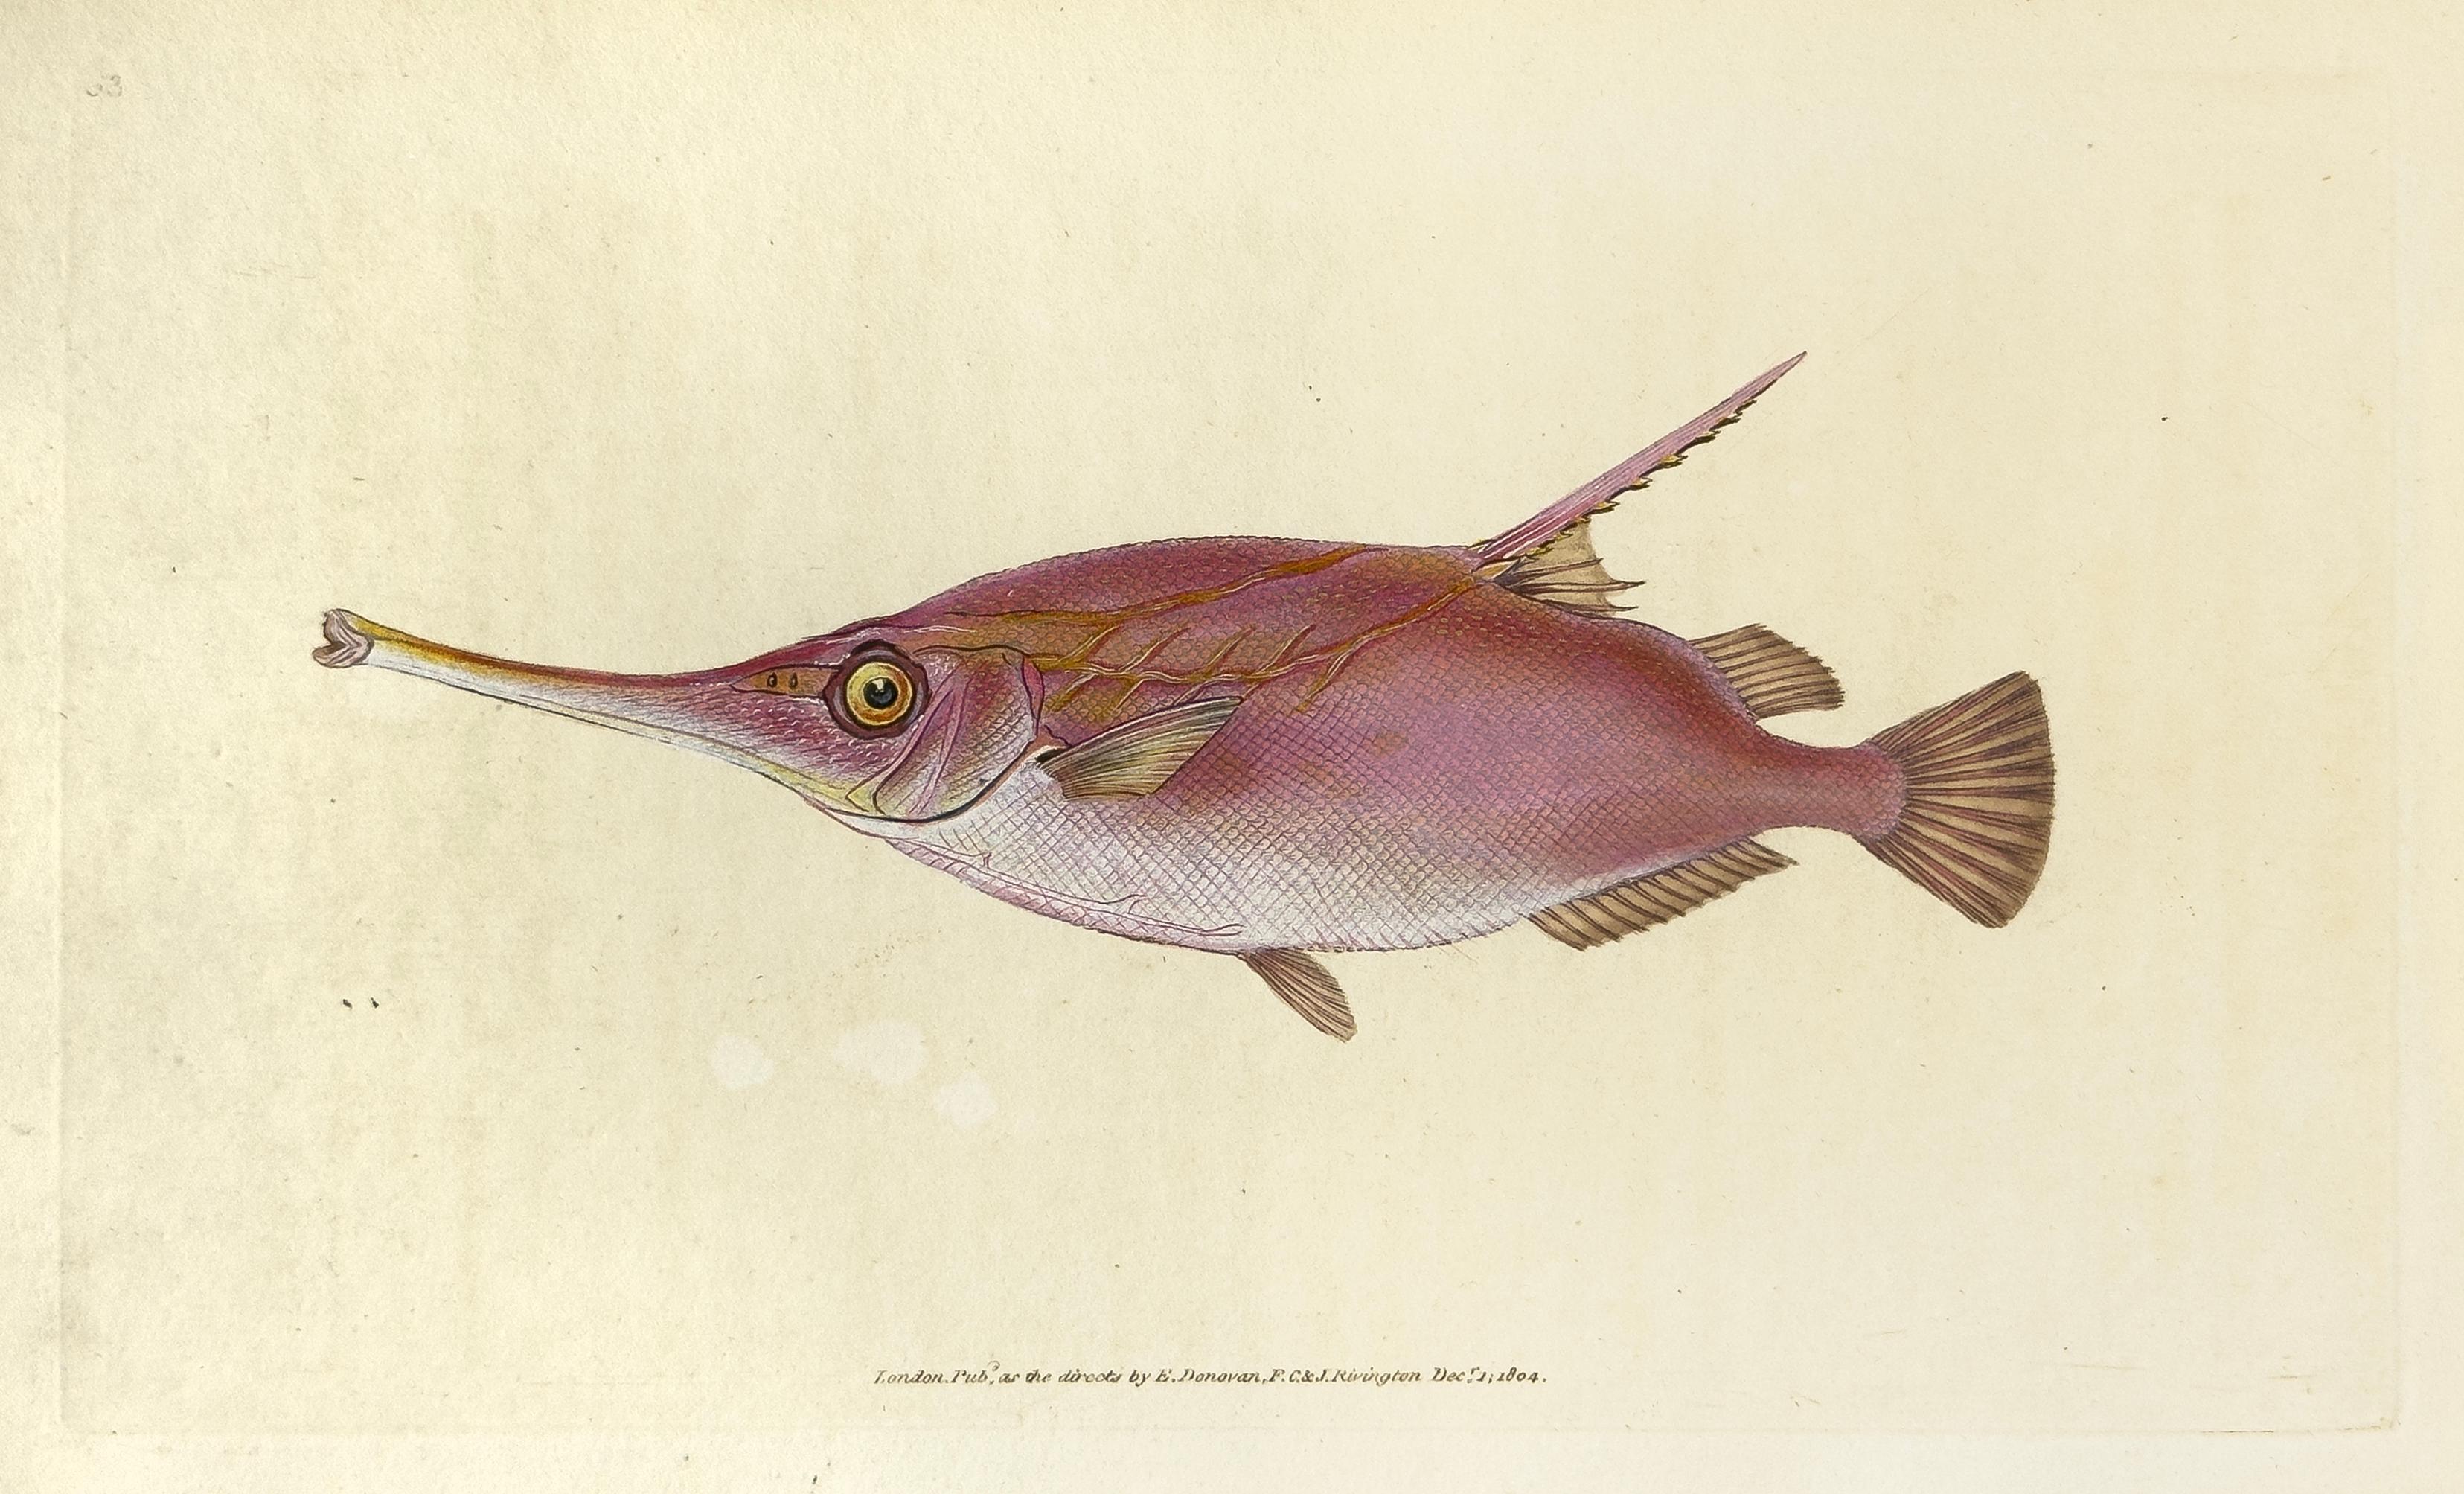 63: Centriscus scolopax, Snipe or Trumpet Fish